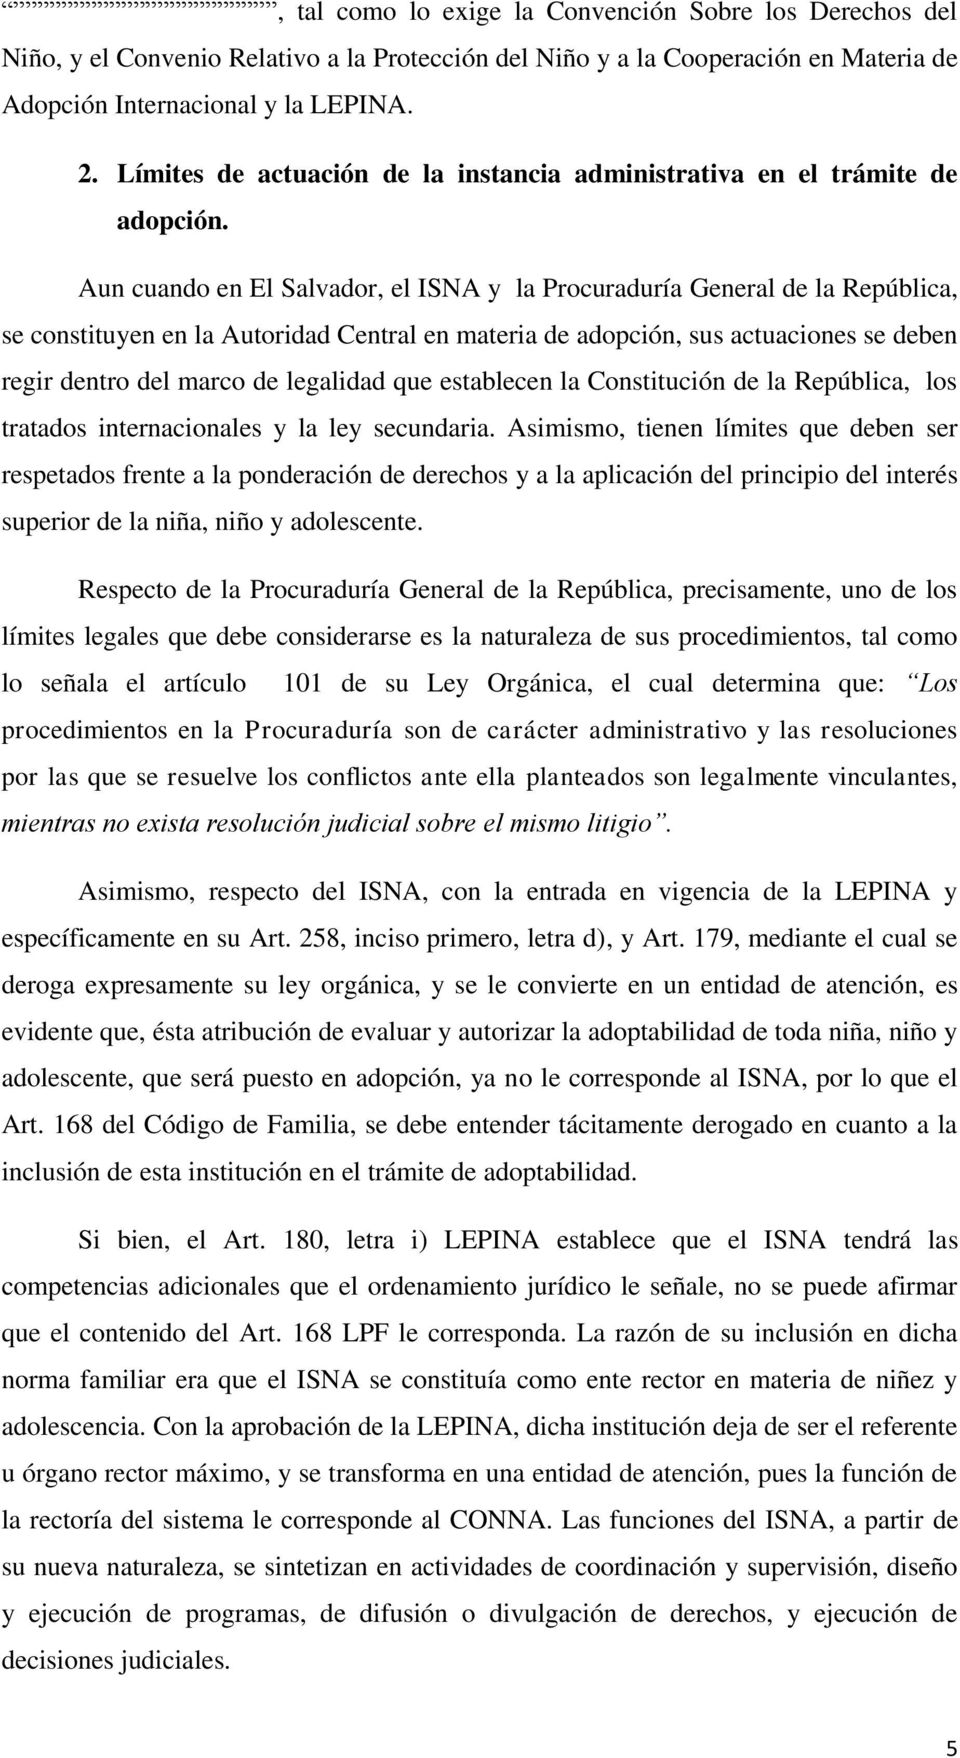 Aun cuando en El Salvador, el ISNA y la Procuraduría General de la República, se constituyen en la Autoridad Central en materia de adopción, sus actuaciones se deben regir dentro del marco de